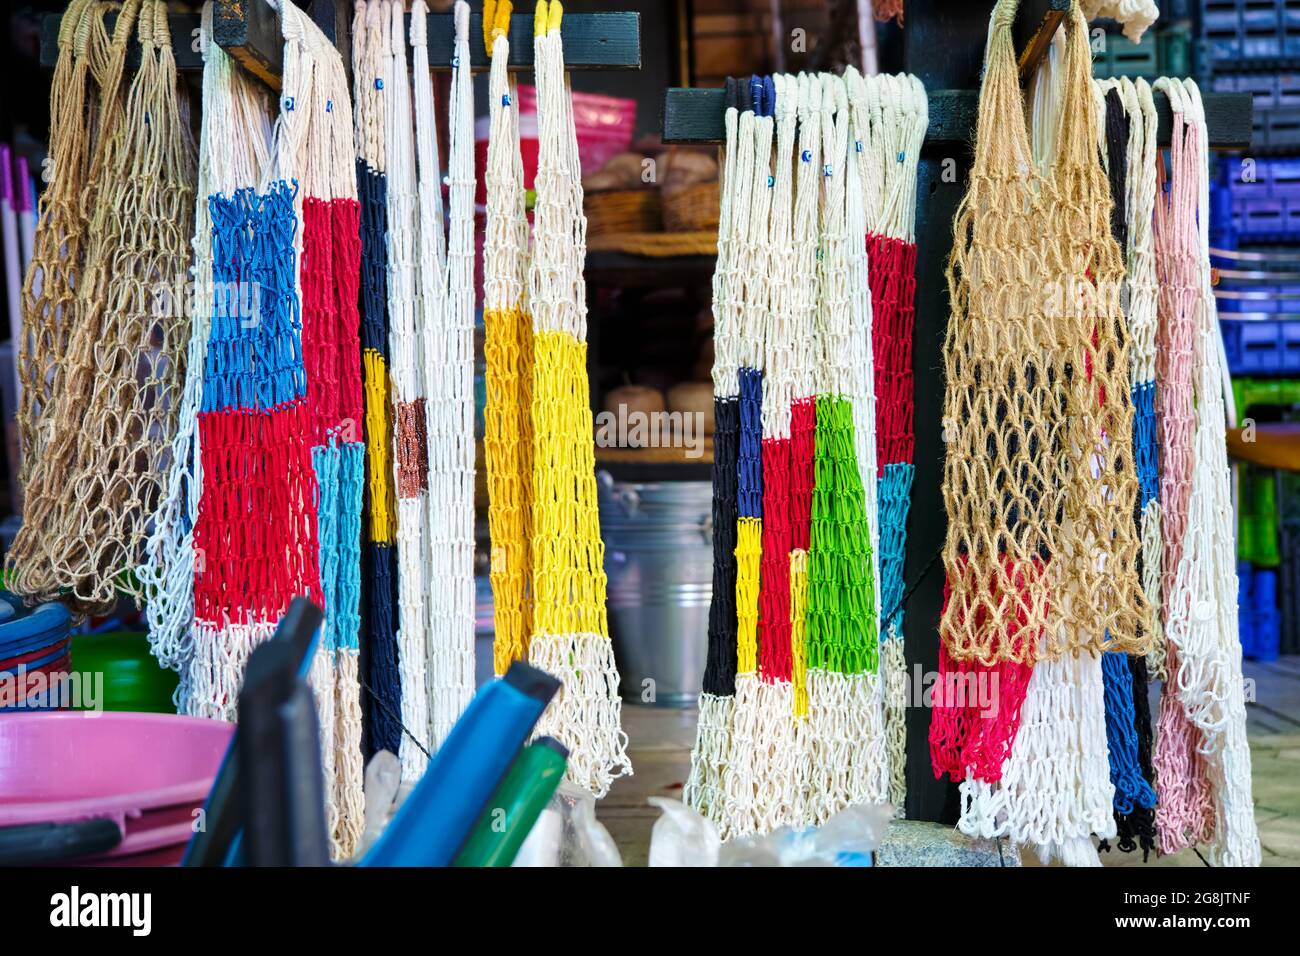 Sacs en maille de coton réutilisables colorés suspendus et présentés dans un magasin de sacs à provisions. Banque D'Images